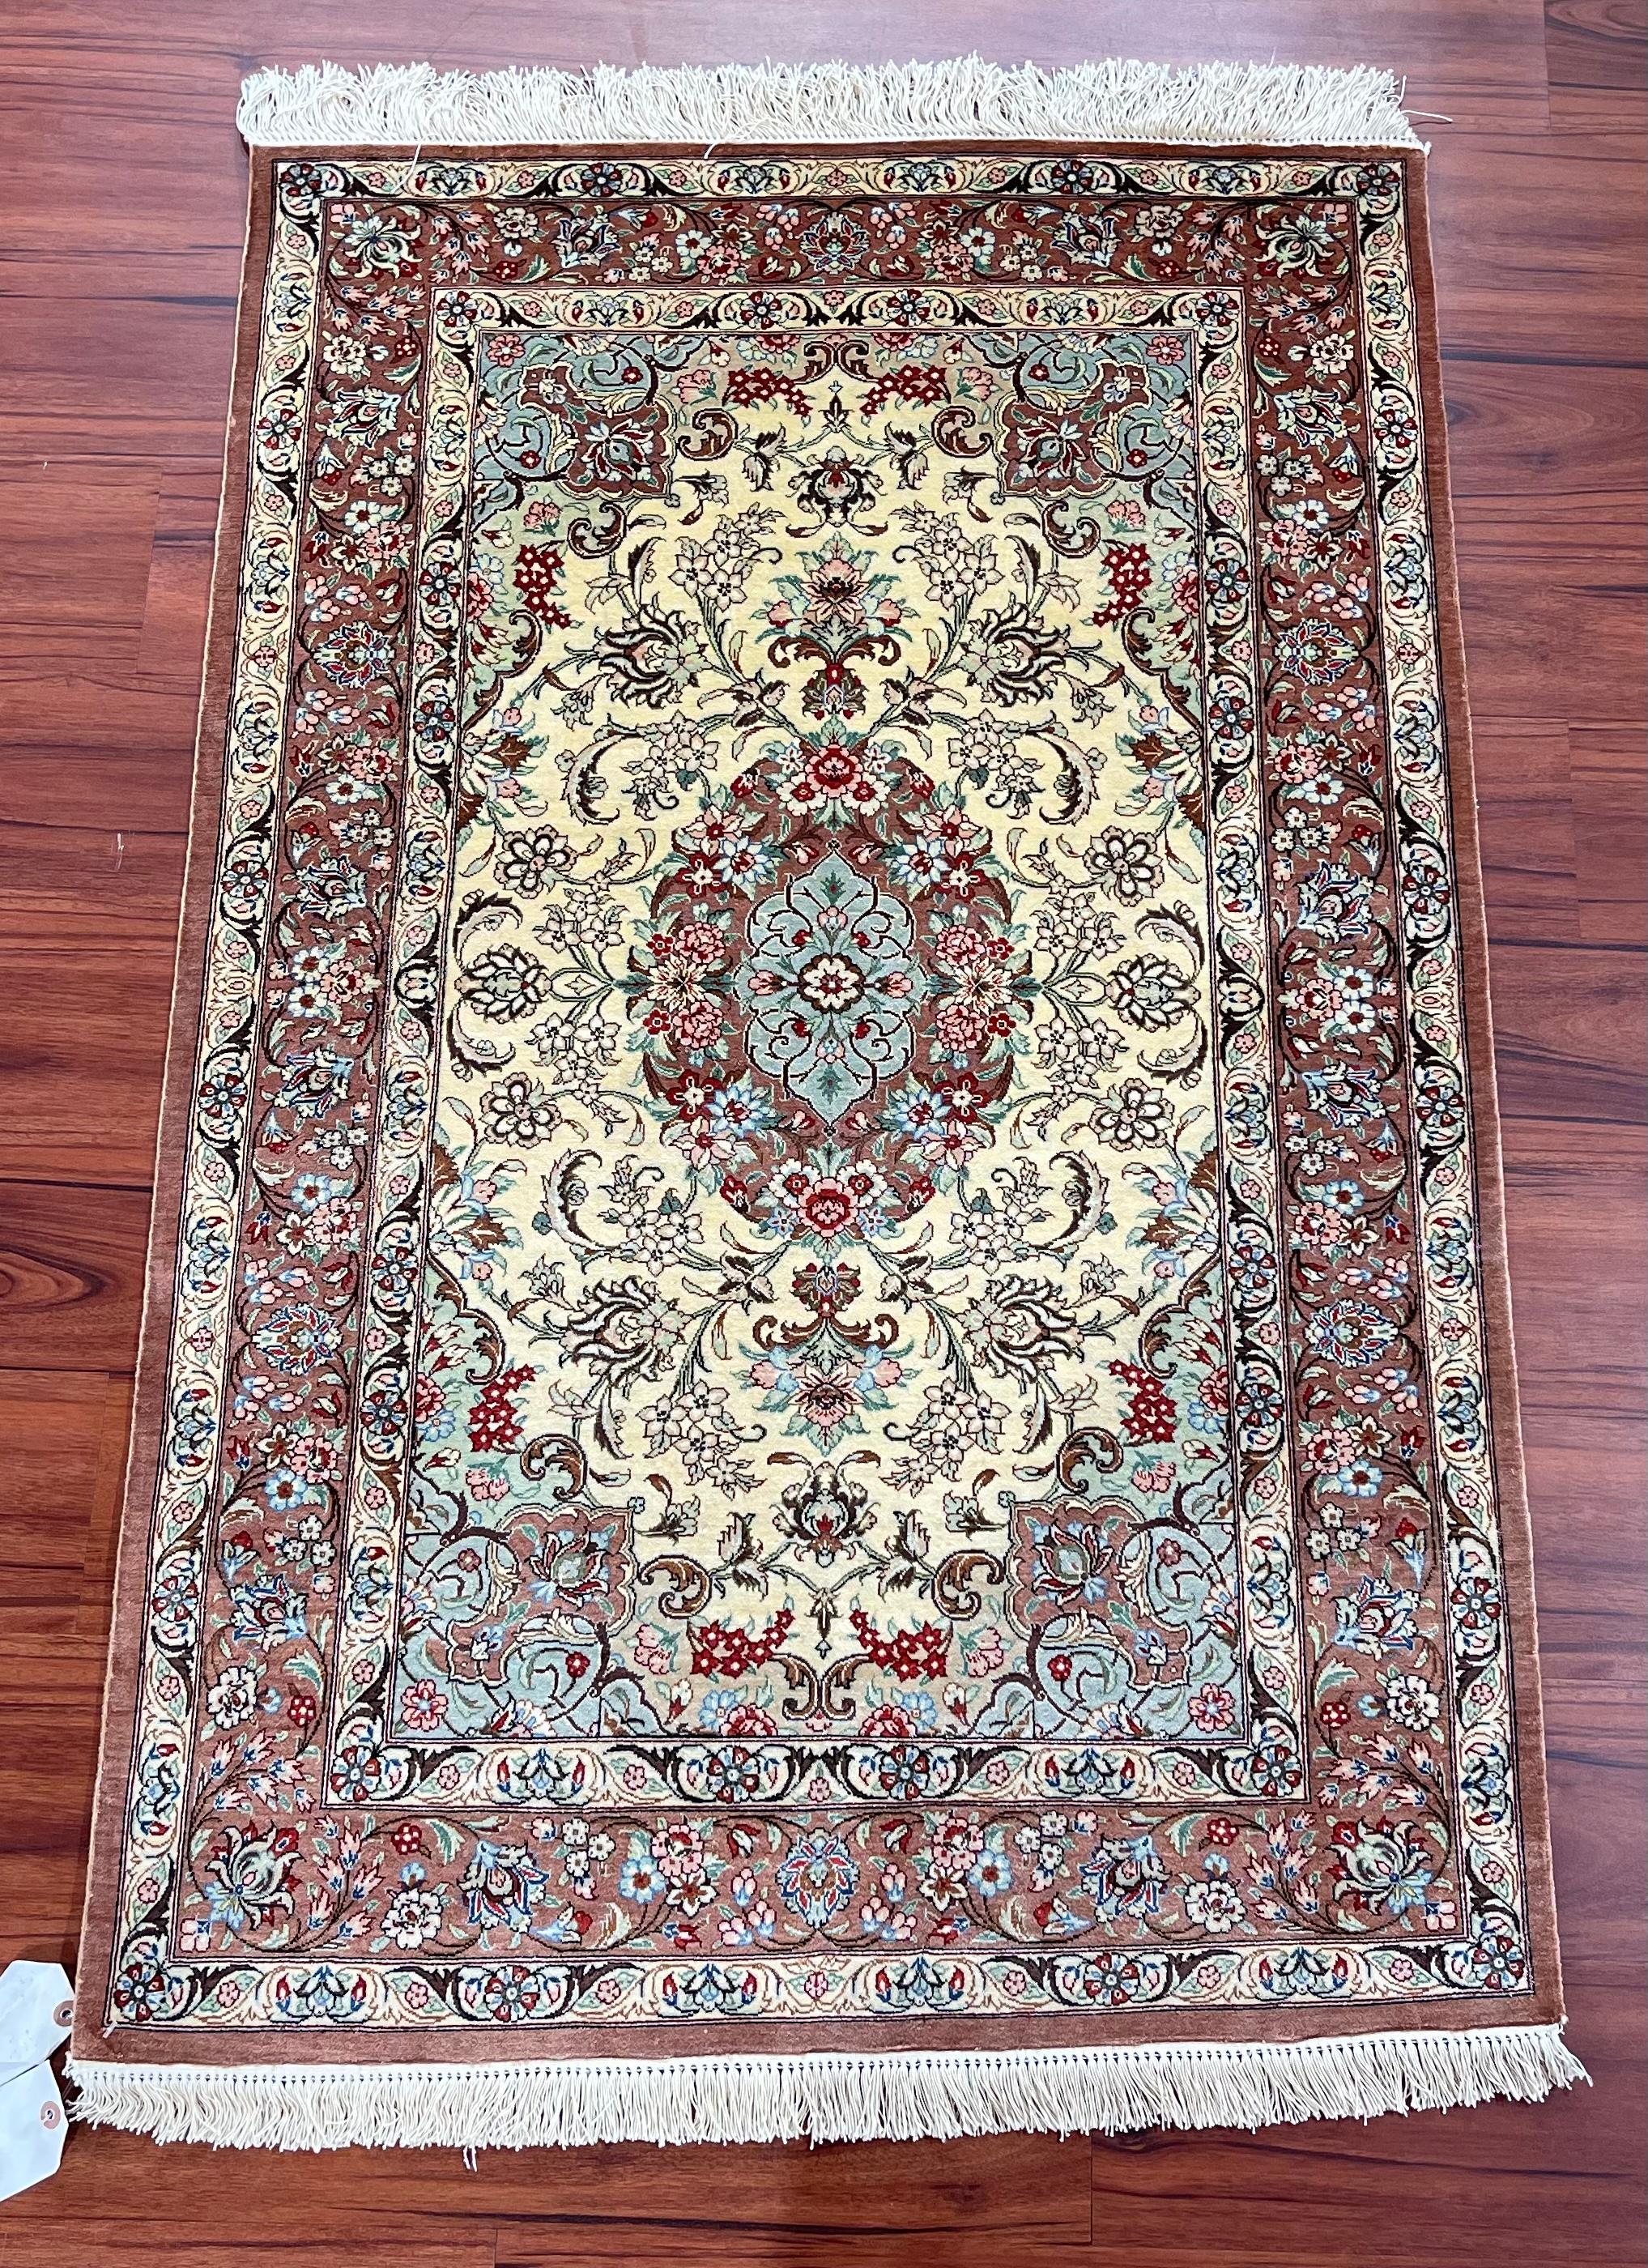 Un étonnant tapis persan Qum 100% soie, originaire d'Iran, à la fin du 20e siècle. Ce tapis est noué à la main et en excellent état. N'hésitez pas à m'envoyer un message si vous avez des questions sur ce tapis ou sur tout autre tapis figurant sur ma